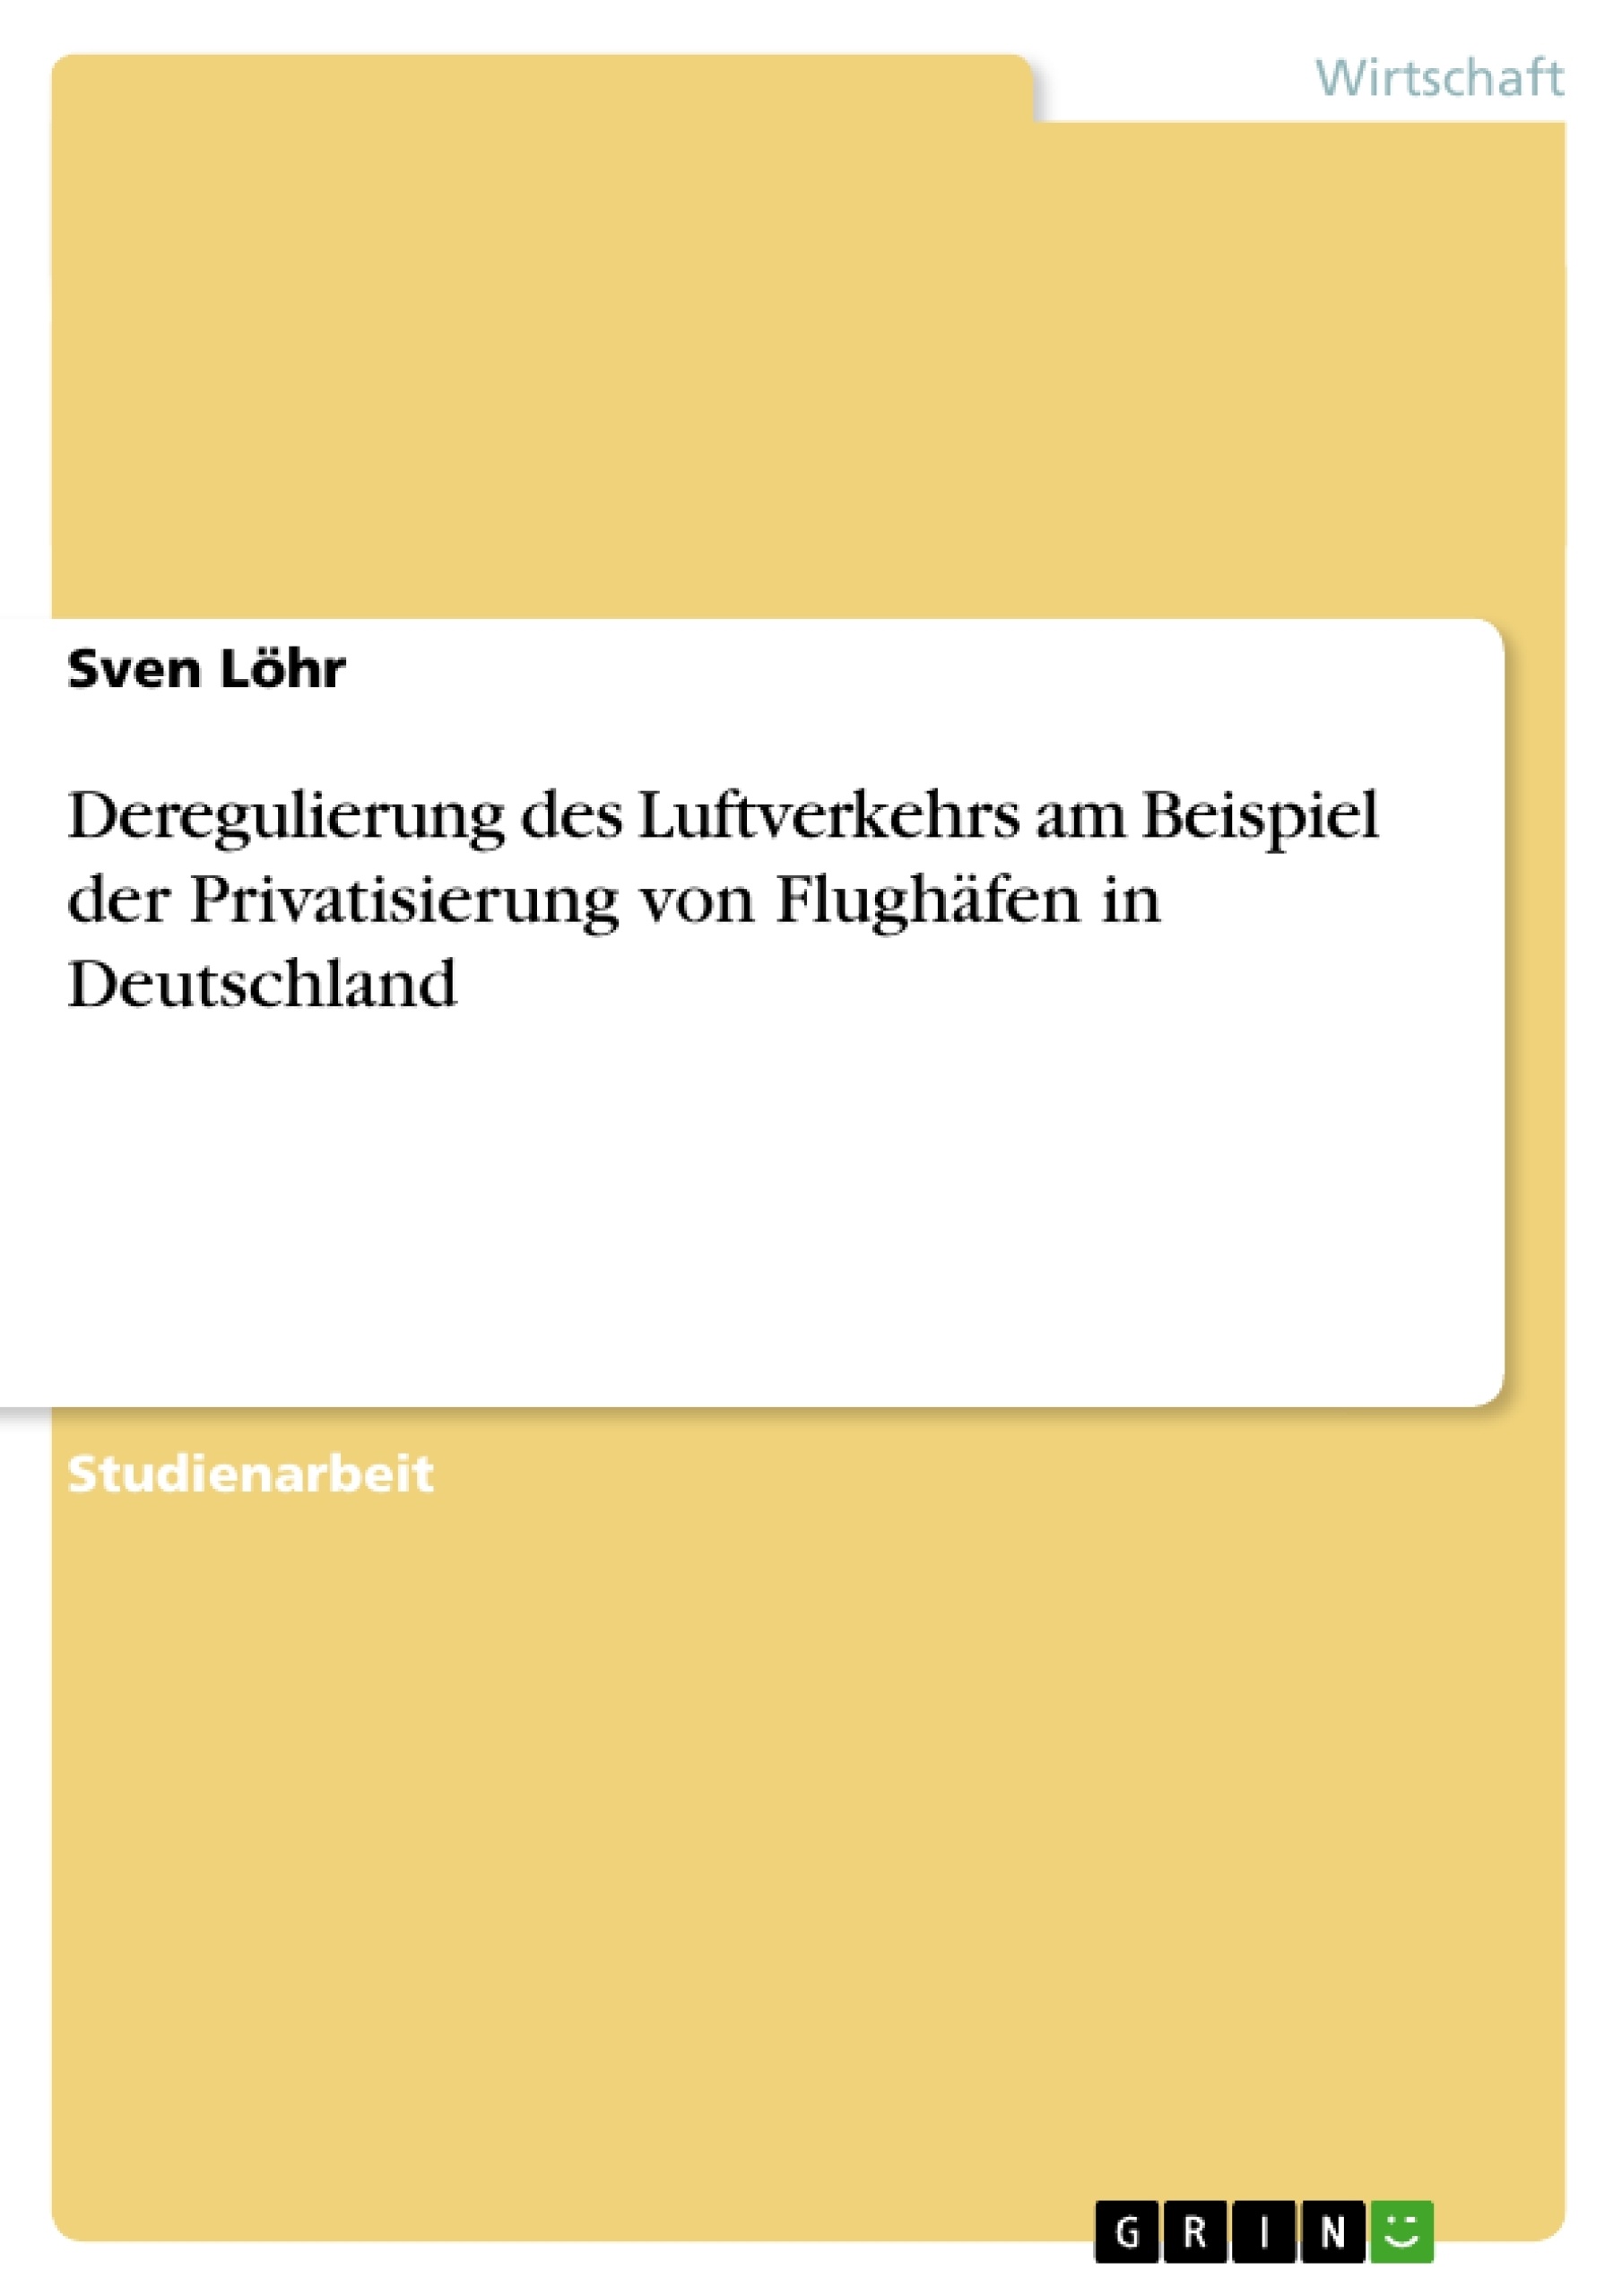 Title: Deregulierung des Luftverkehrs am Beispiel der Privatisierung von Flughäfen in Deutschland